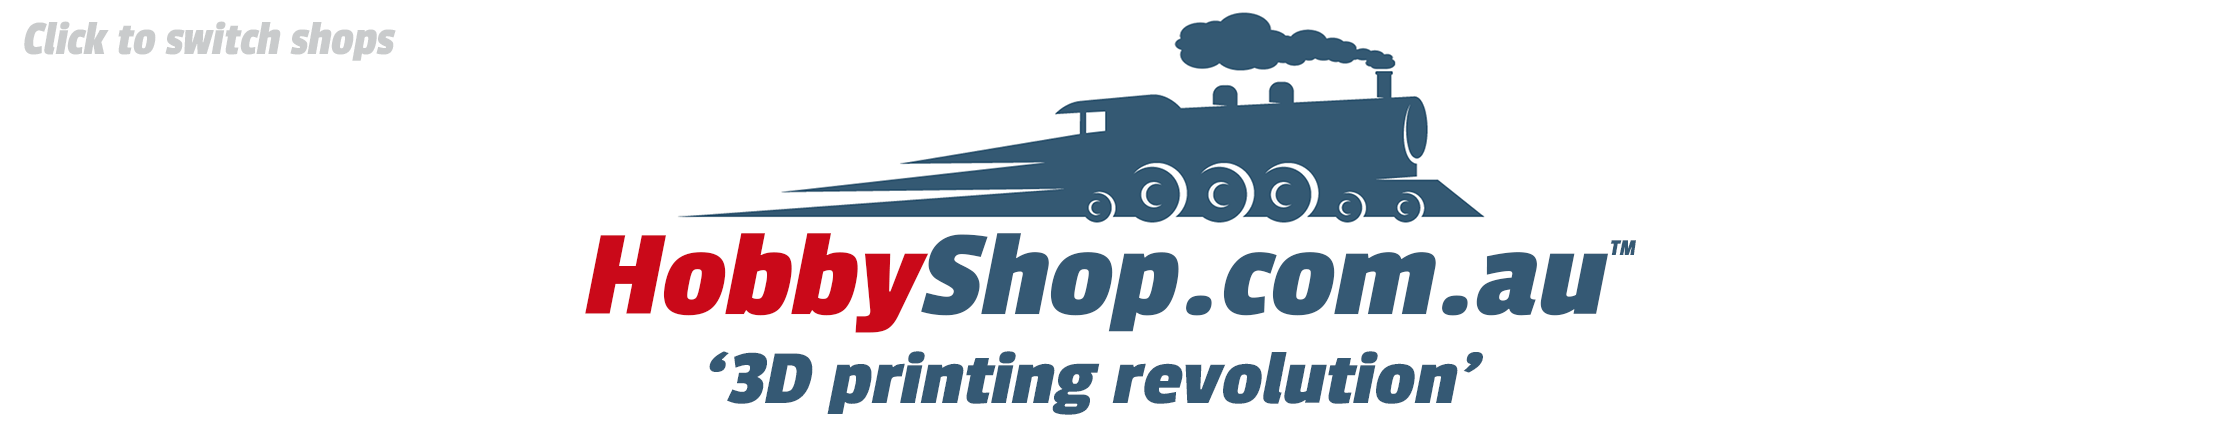 HobbyShop.com.au  - 3D printing revolution